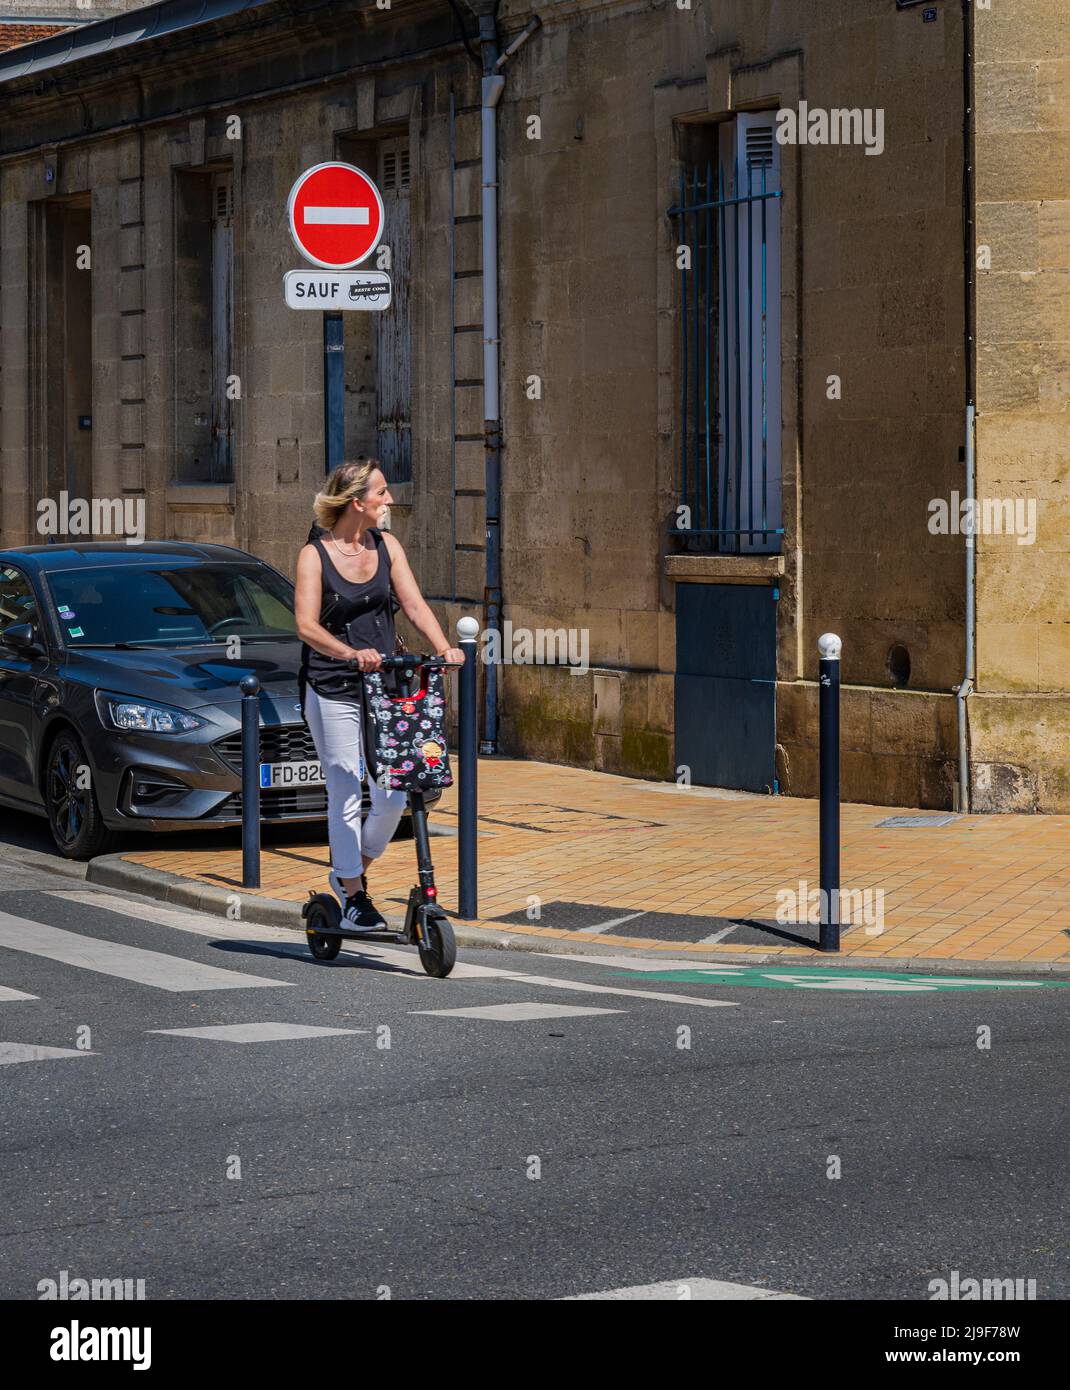 Avenue Journu Auber, Chartrons, Bordeaux, Frankreich - Probleme Beim Parken Stockfoto